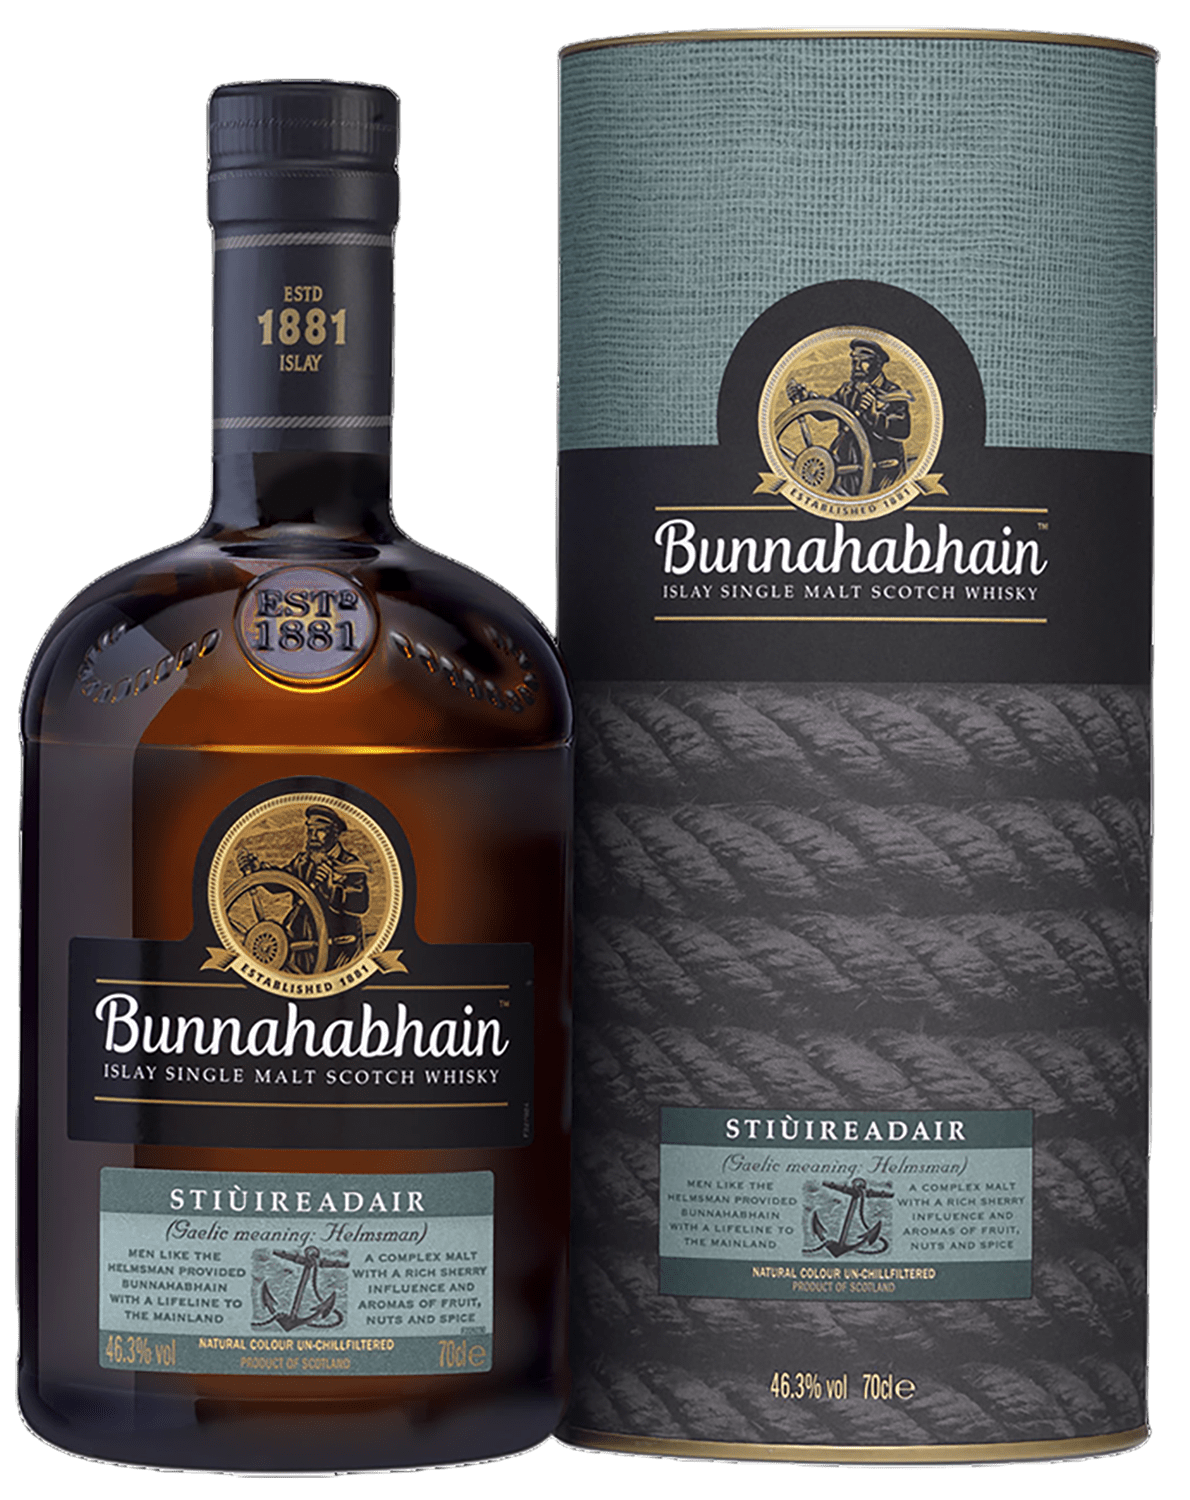 Bunnahabhain Stiuireadair Islay Single Malt Scotch Whisky (gift box) bunnahabhain stiuireadair islay single malt scotch whisky gift box